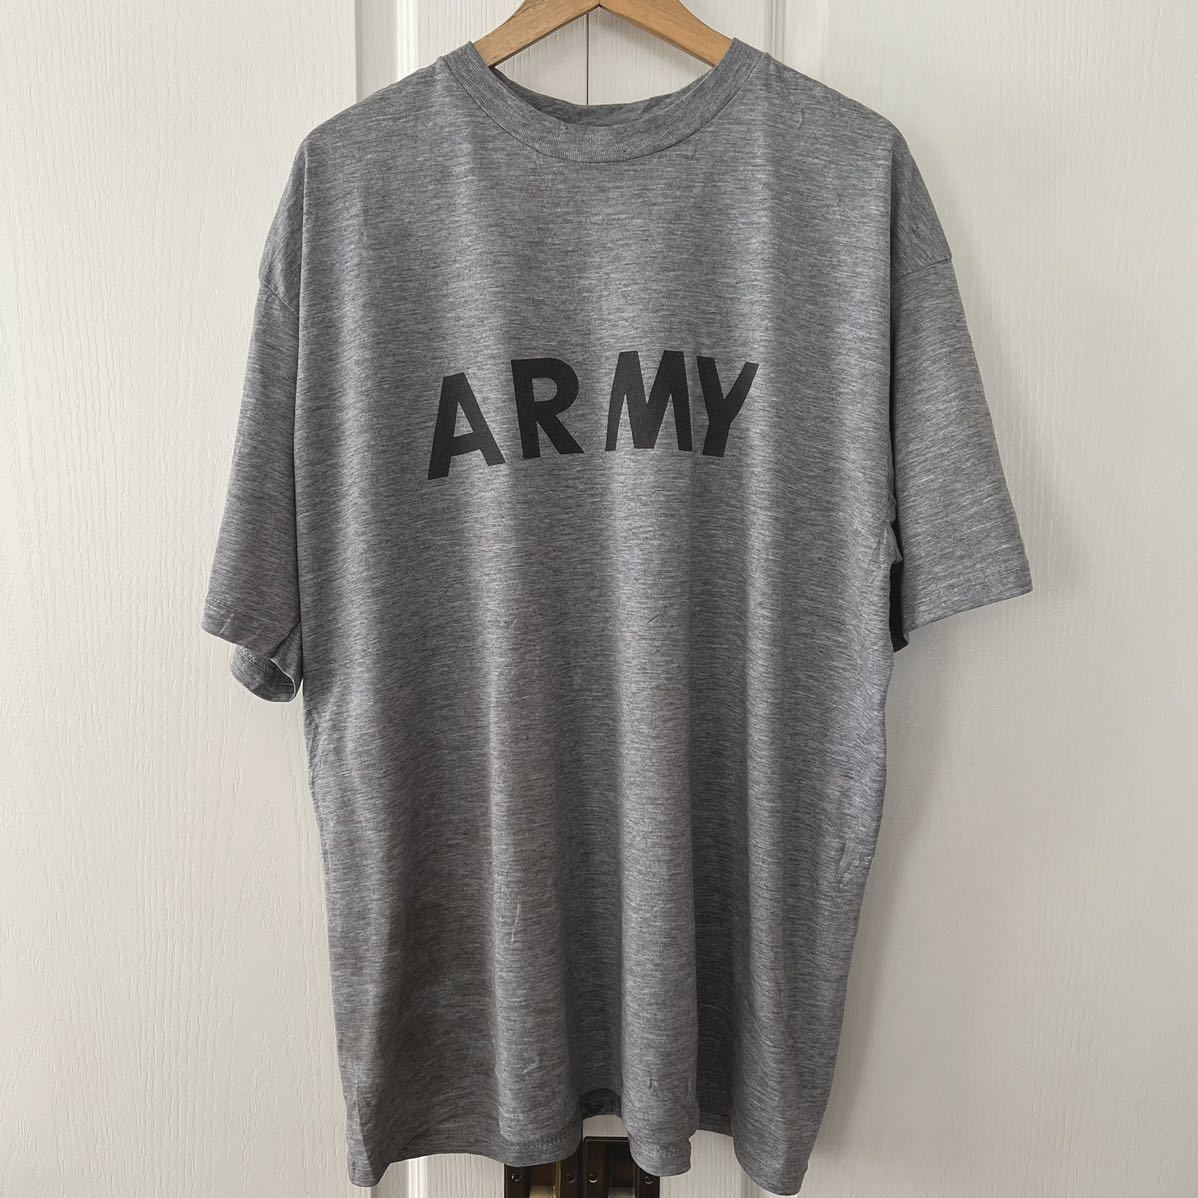 U.S ARMY 米軍 フィジカル 半袖 Tシャツ アーミー プリントTシャツ XL 杢グレー 実物 us army アメリカ軍 バックプリント ビッグシルエットの画像1